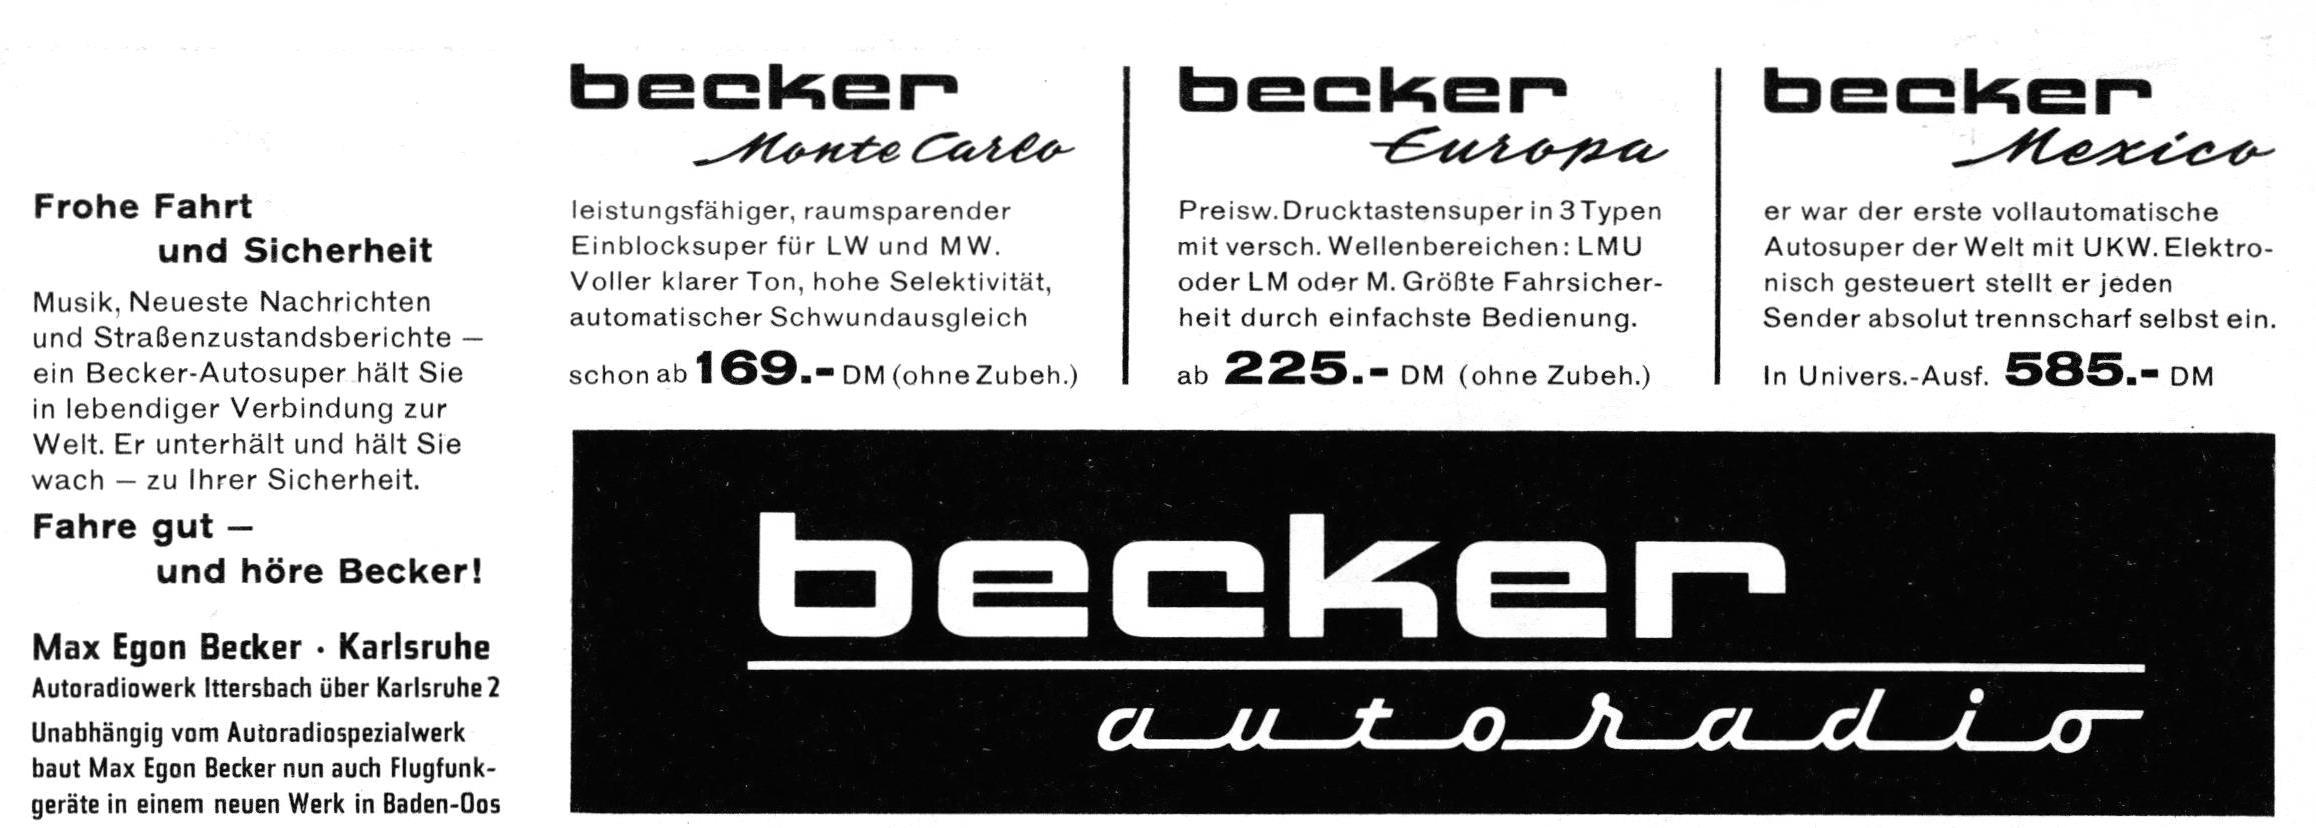 Becker 1958 0.jpg